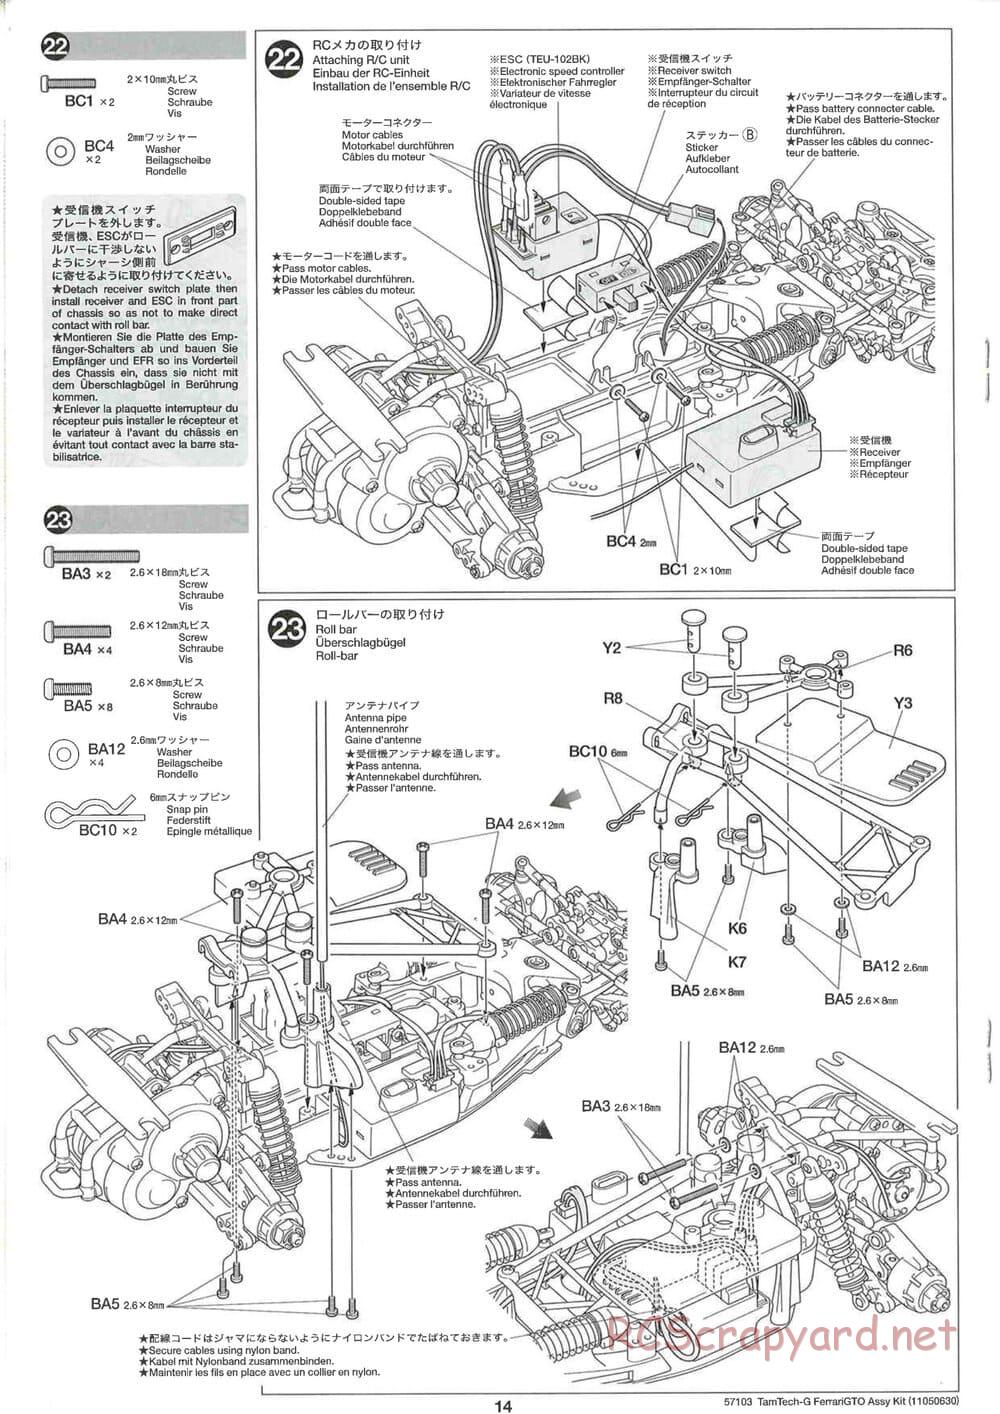 Tamiya - Ferrari 288 GTO - GT-01 Chassis - Manual - Page 14